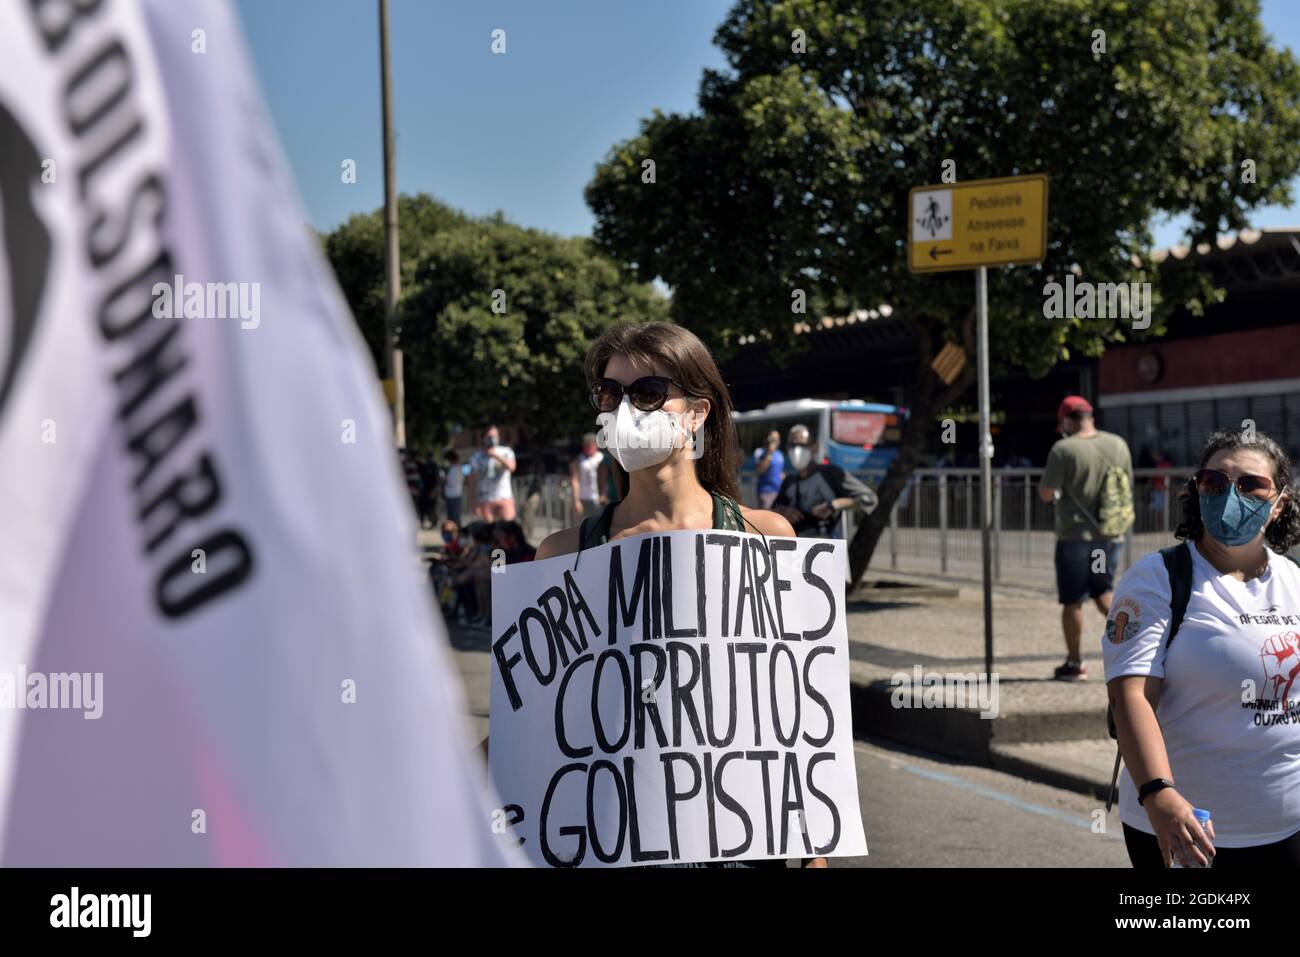 24 luglio 2021: Una donna che ha un cartello con la scritta “fuori militari, corrotti e coupists” partecipa alla protesta anti-Bolsonaro tenutasi a Rio de Janeiro. Foto Stock